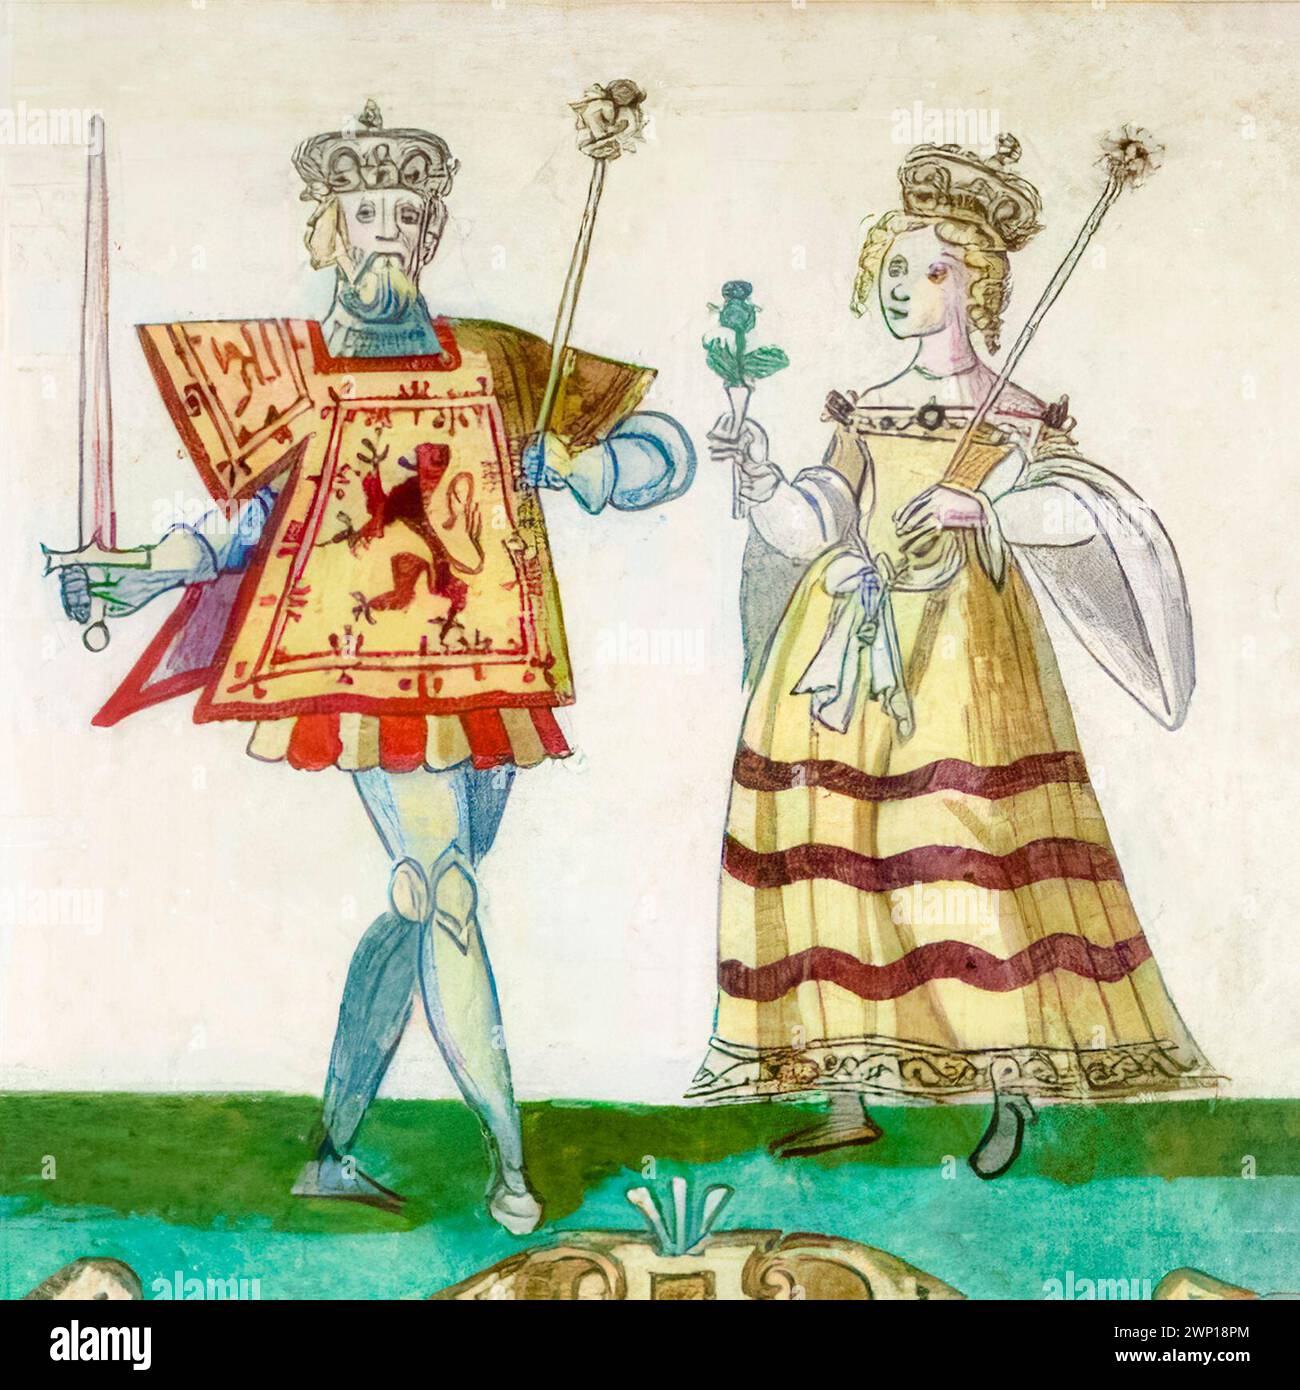 Roberto III di Scozia (circa 1337-1406) nato John Stewart, re di Scozia 1390-1406 con sua moglie Anabella Drummond (circa 1350-1401), regina consorte di Scozia 1390-1401, manoscritto miniato ritratto, circa 1562 Foto Stock